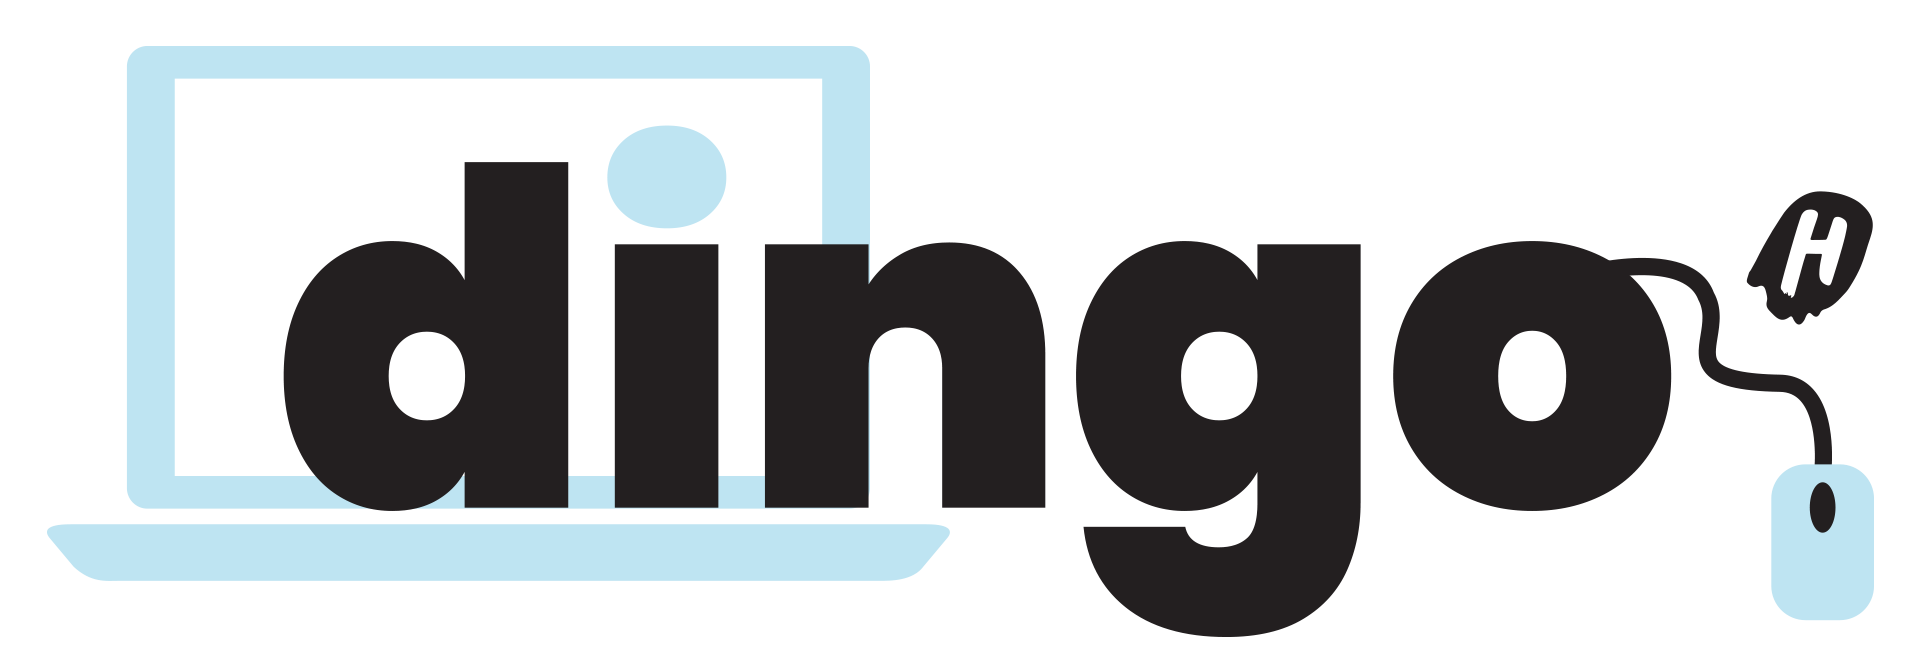 Digioppimisen kehittämisryhmän nimi on Dingo. Kuvassa on Dingo-logo kirjaimin.